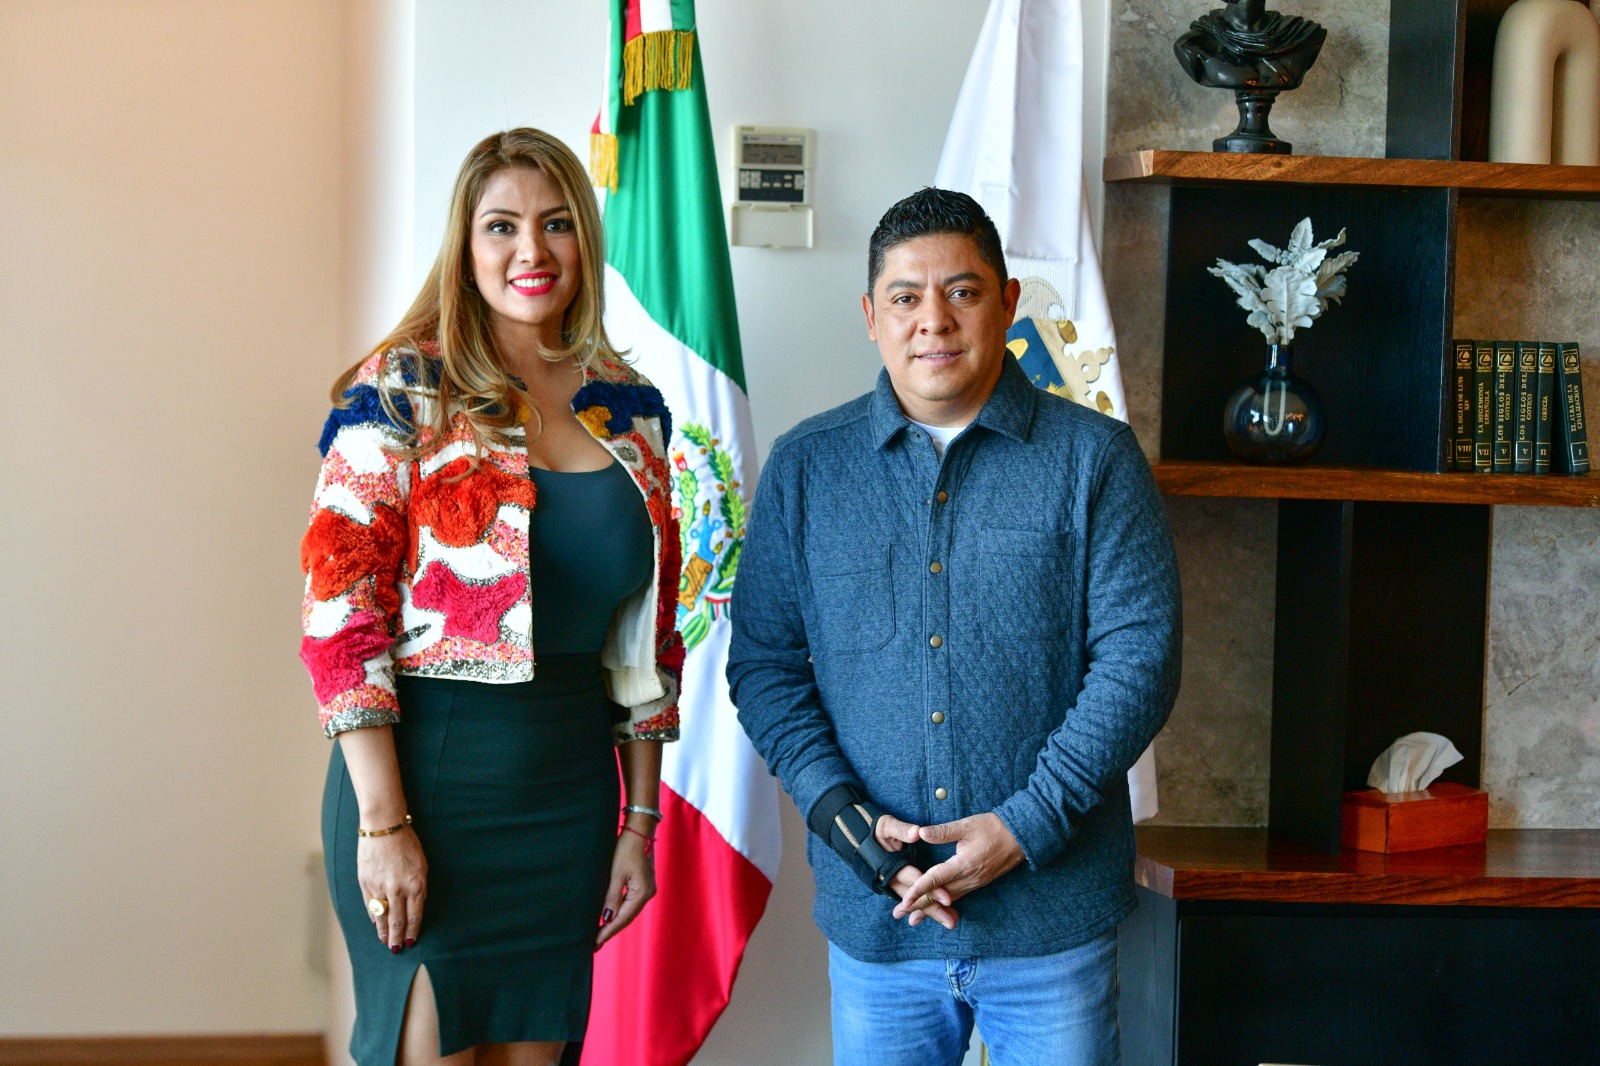 La Asociación de Municipios de México, destacó la labor del Mandatario Estatal en apoyo al desarrollo y crecimiento del Estado potosino